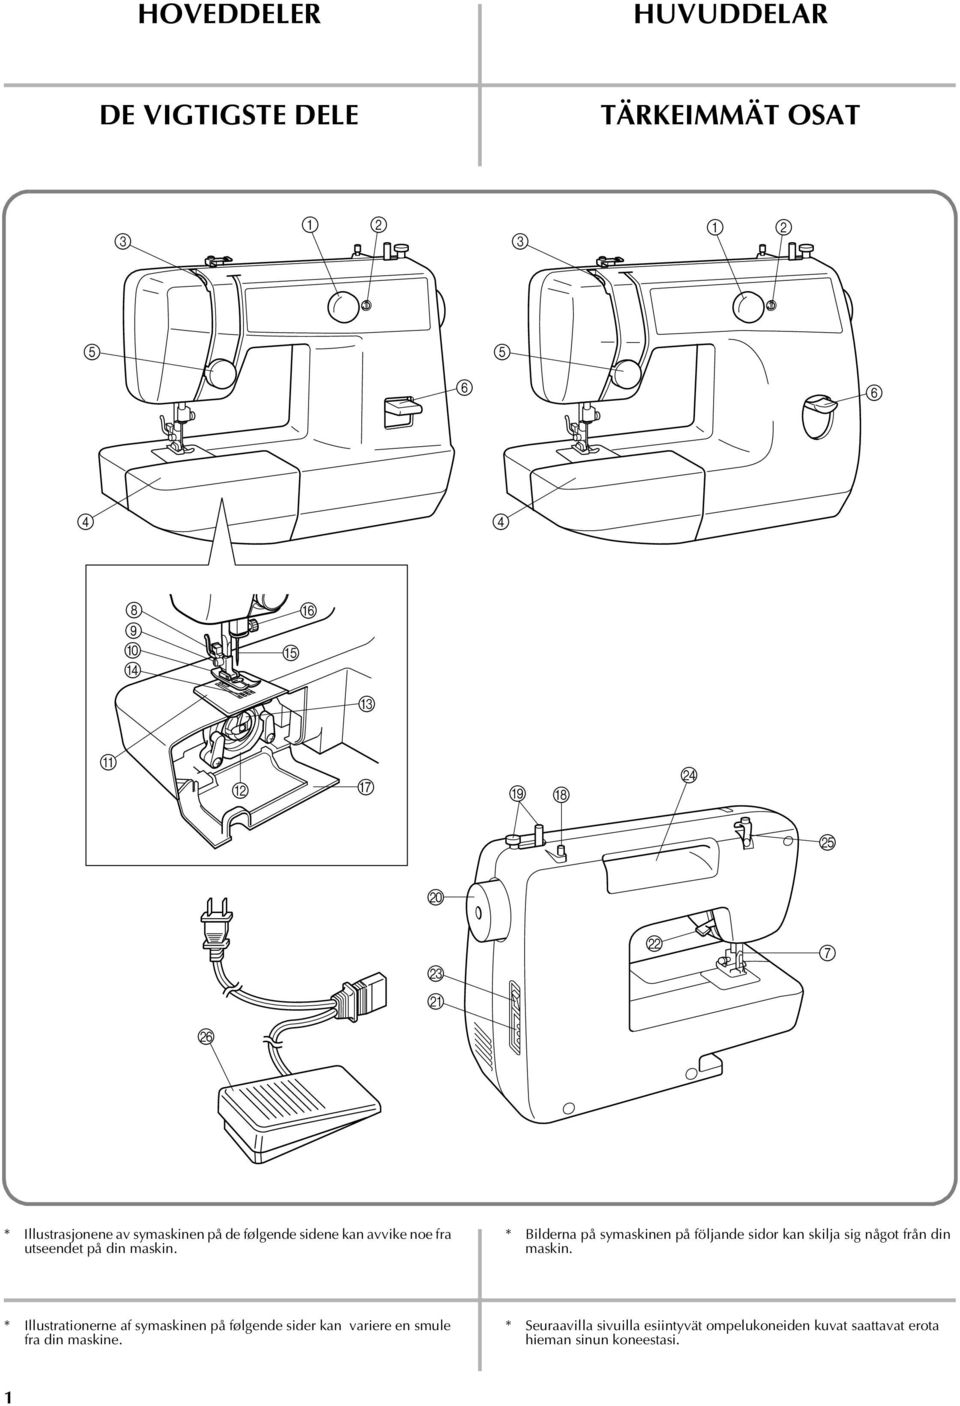 * Bilderna på symaskinen på följande sidor kan skilja sig något från din maskin.